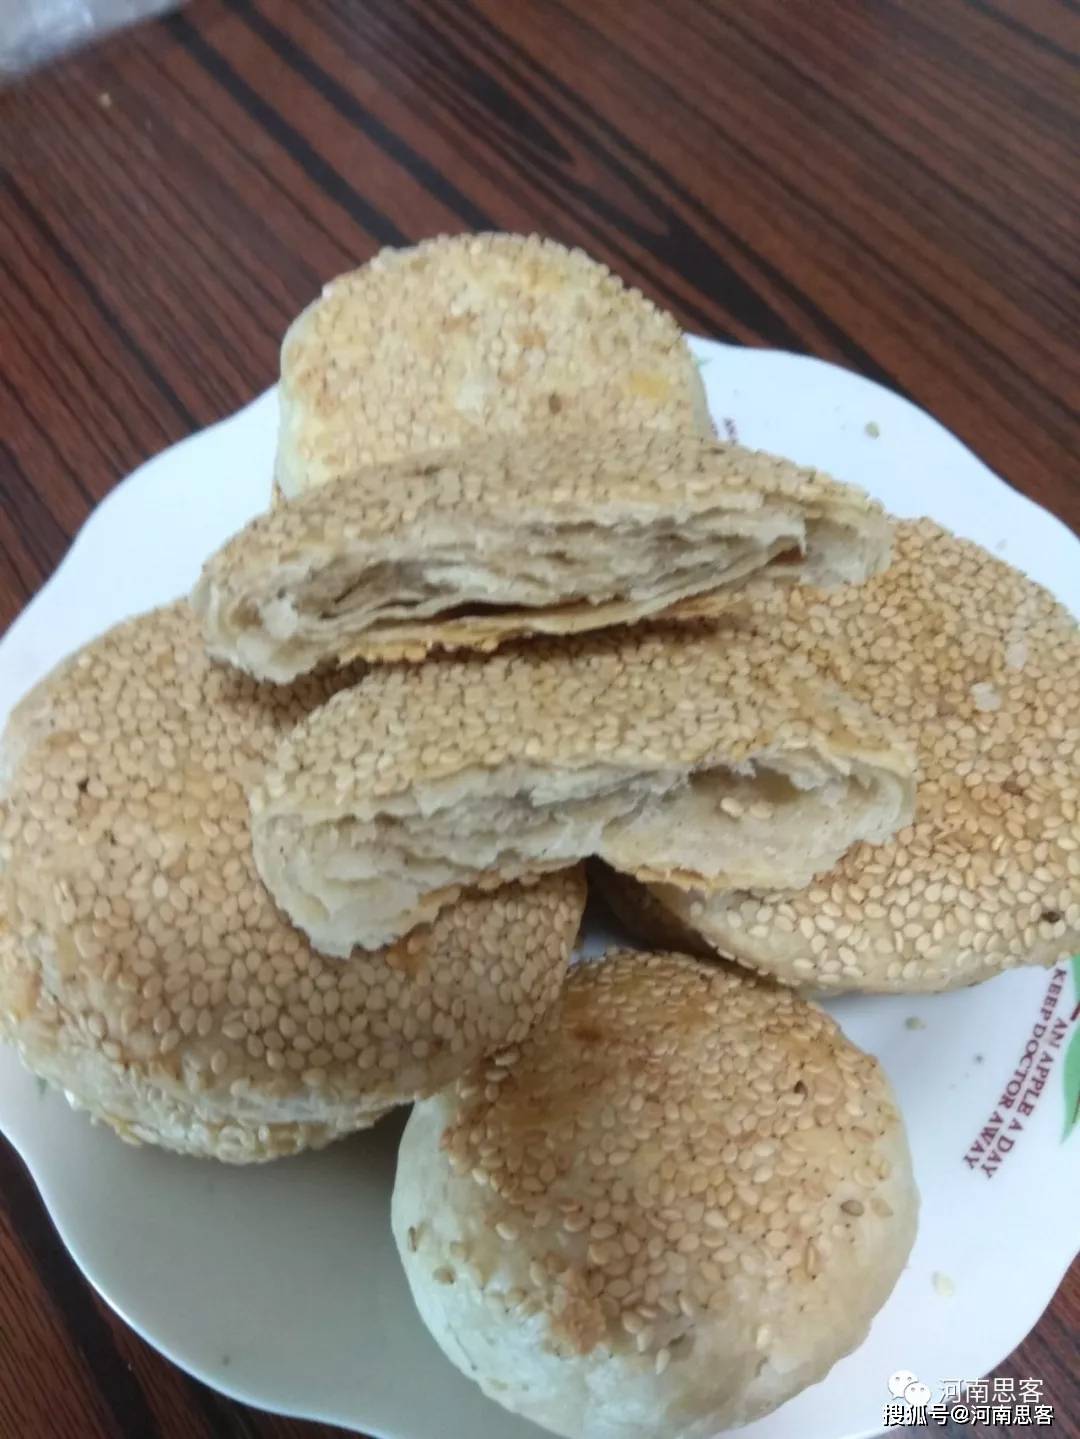 太极双麻饼 - 产品展示 - 旬阳市旬汉食品有限公司